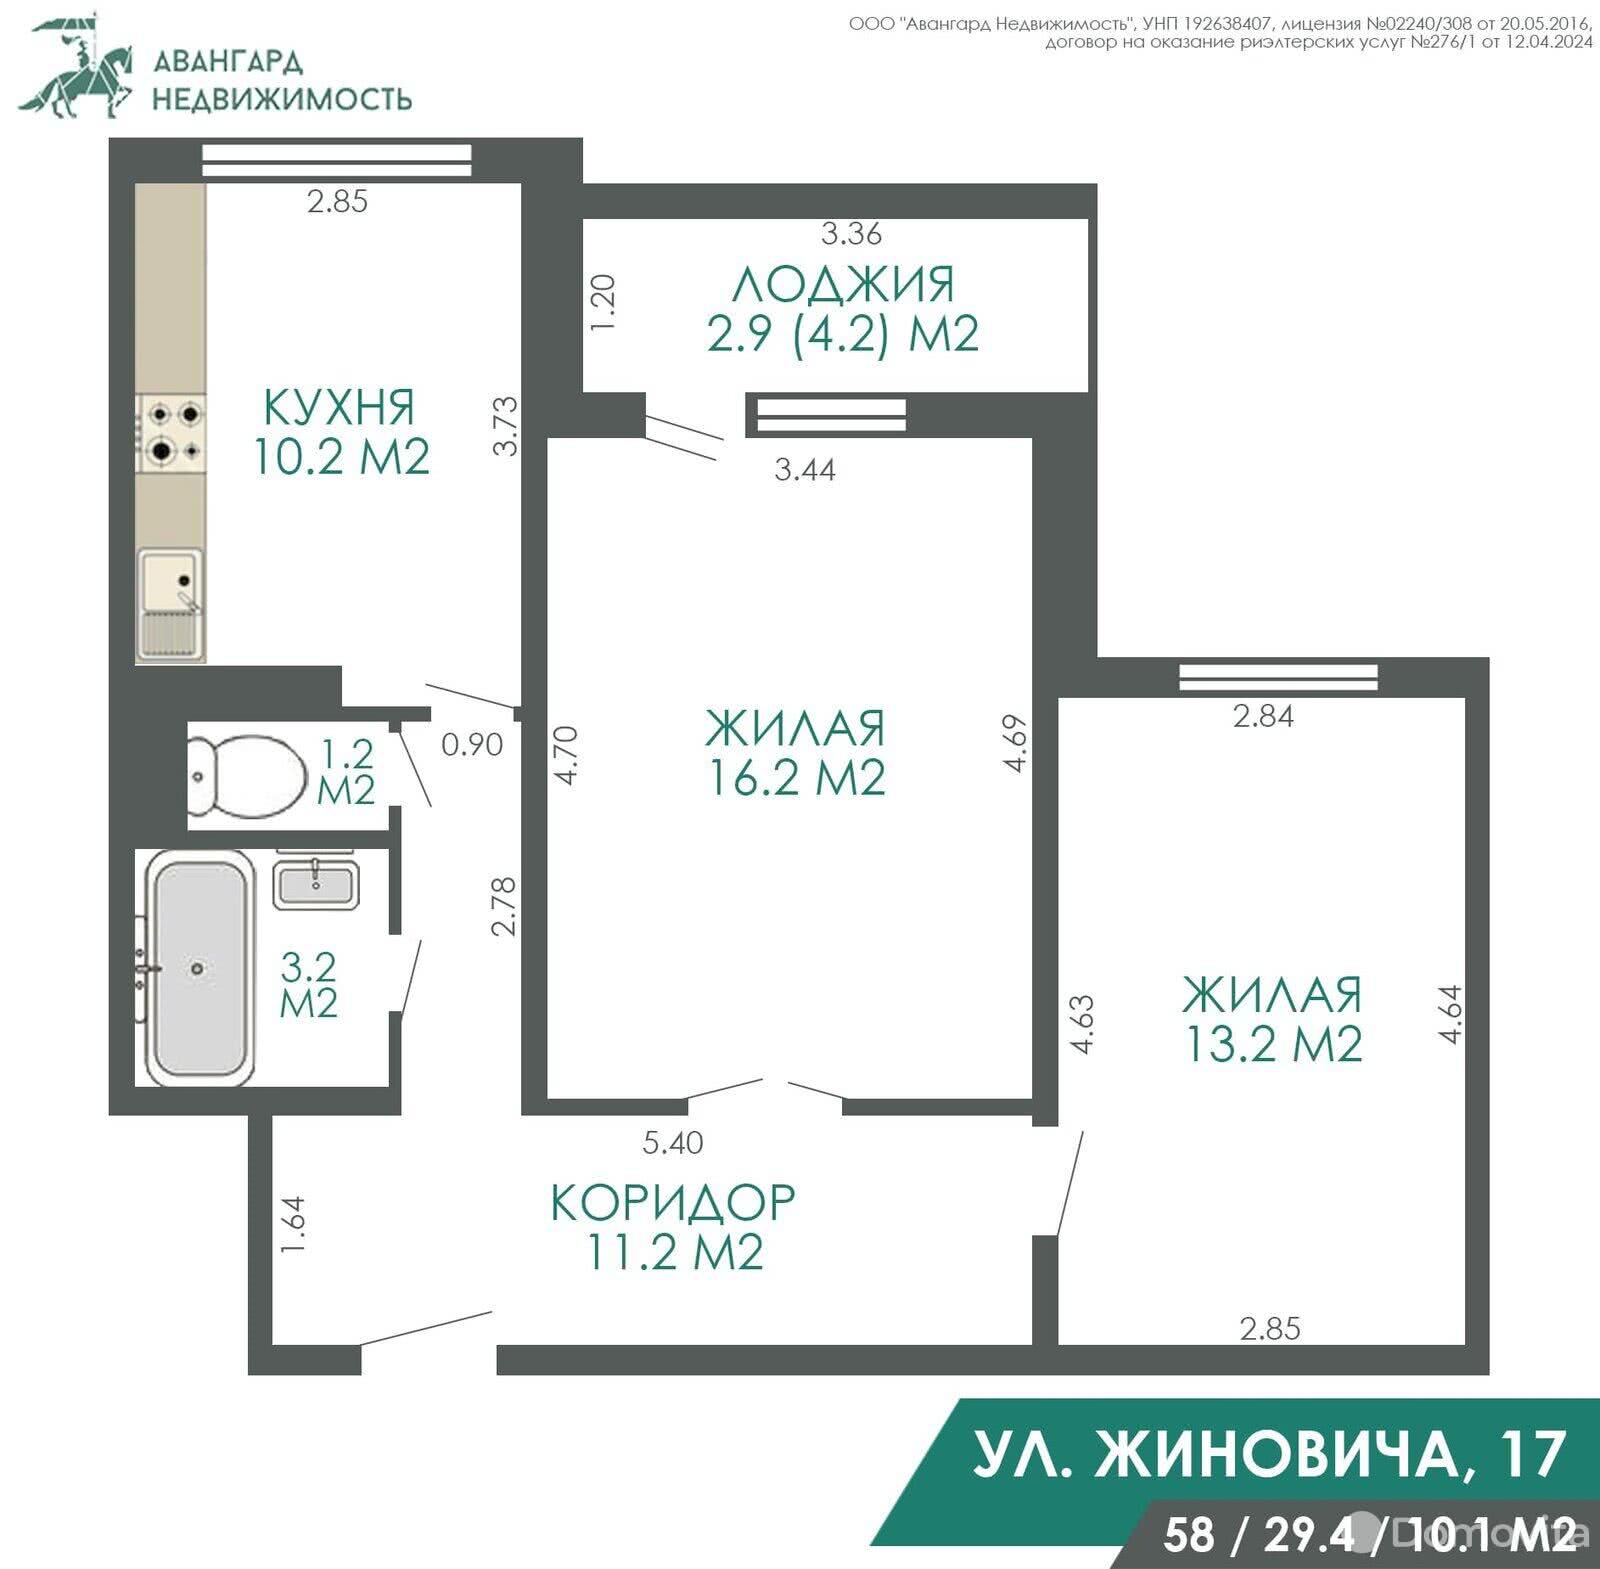 Цена продажи квартиры, Минск, ул. Иосифа Жиновича, д. 17